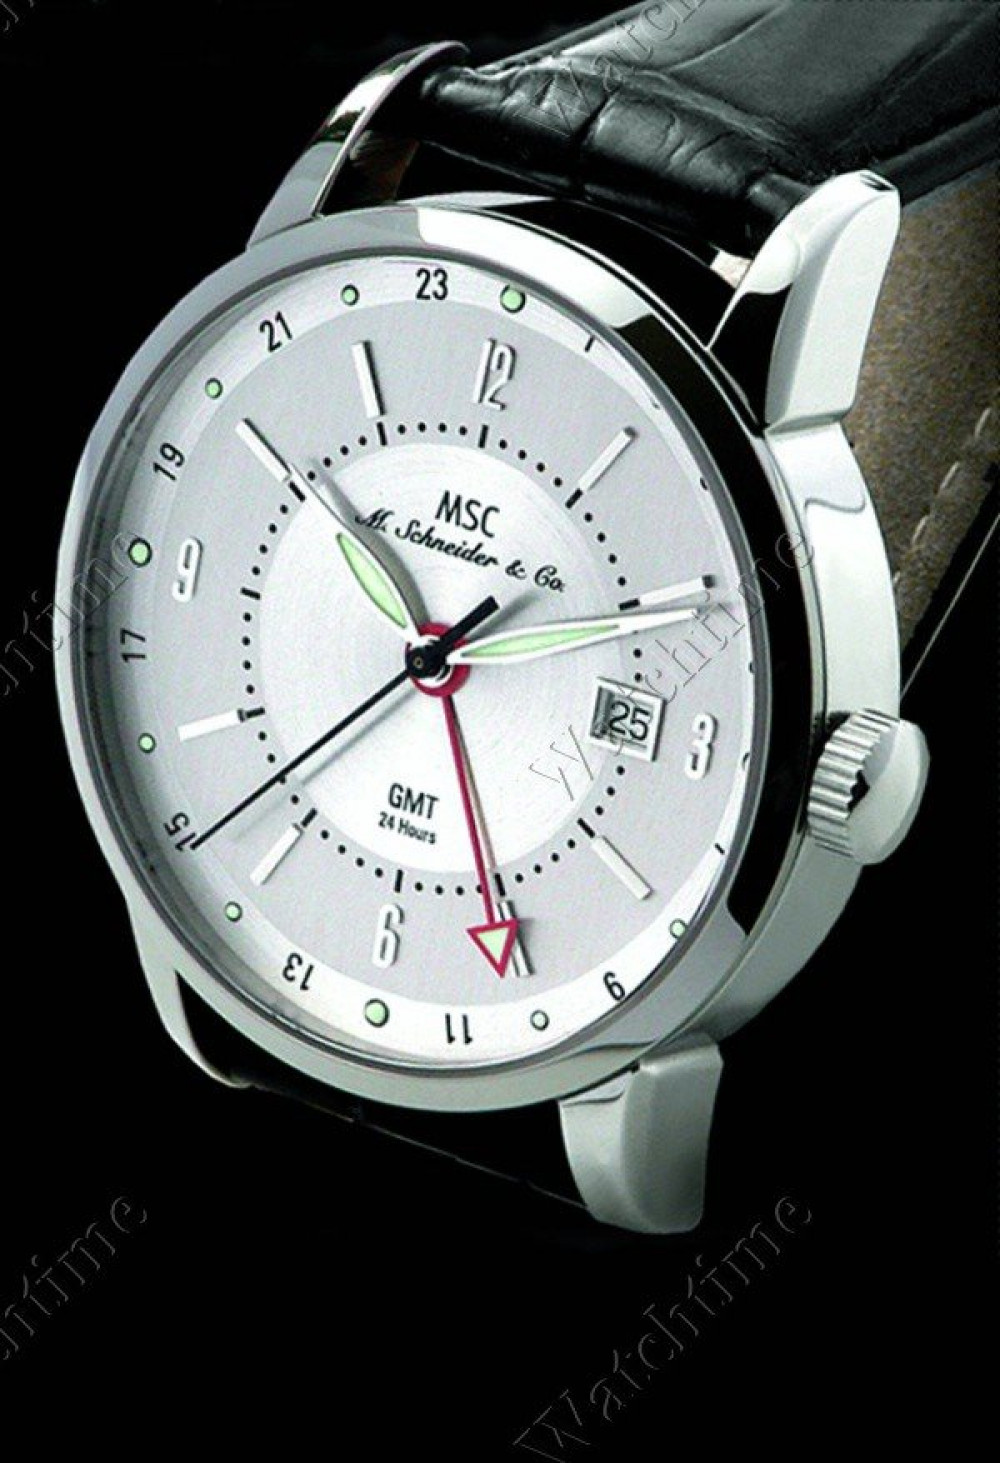 Zegarek firmy MSC M. Schneider & Co., model Luxor GMT Special Edition